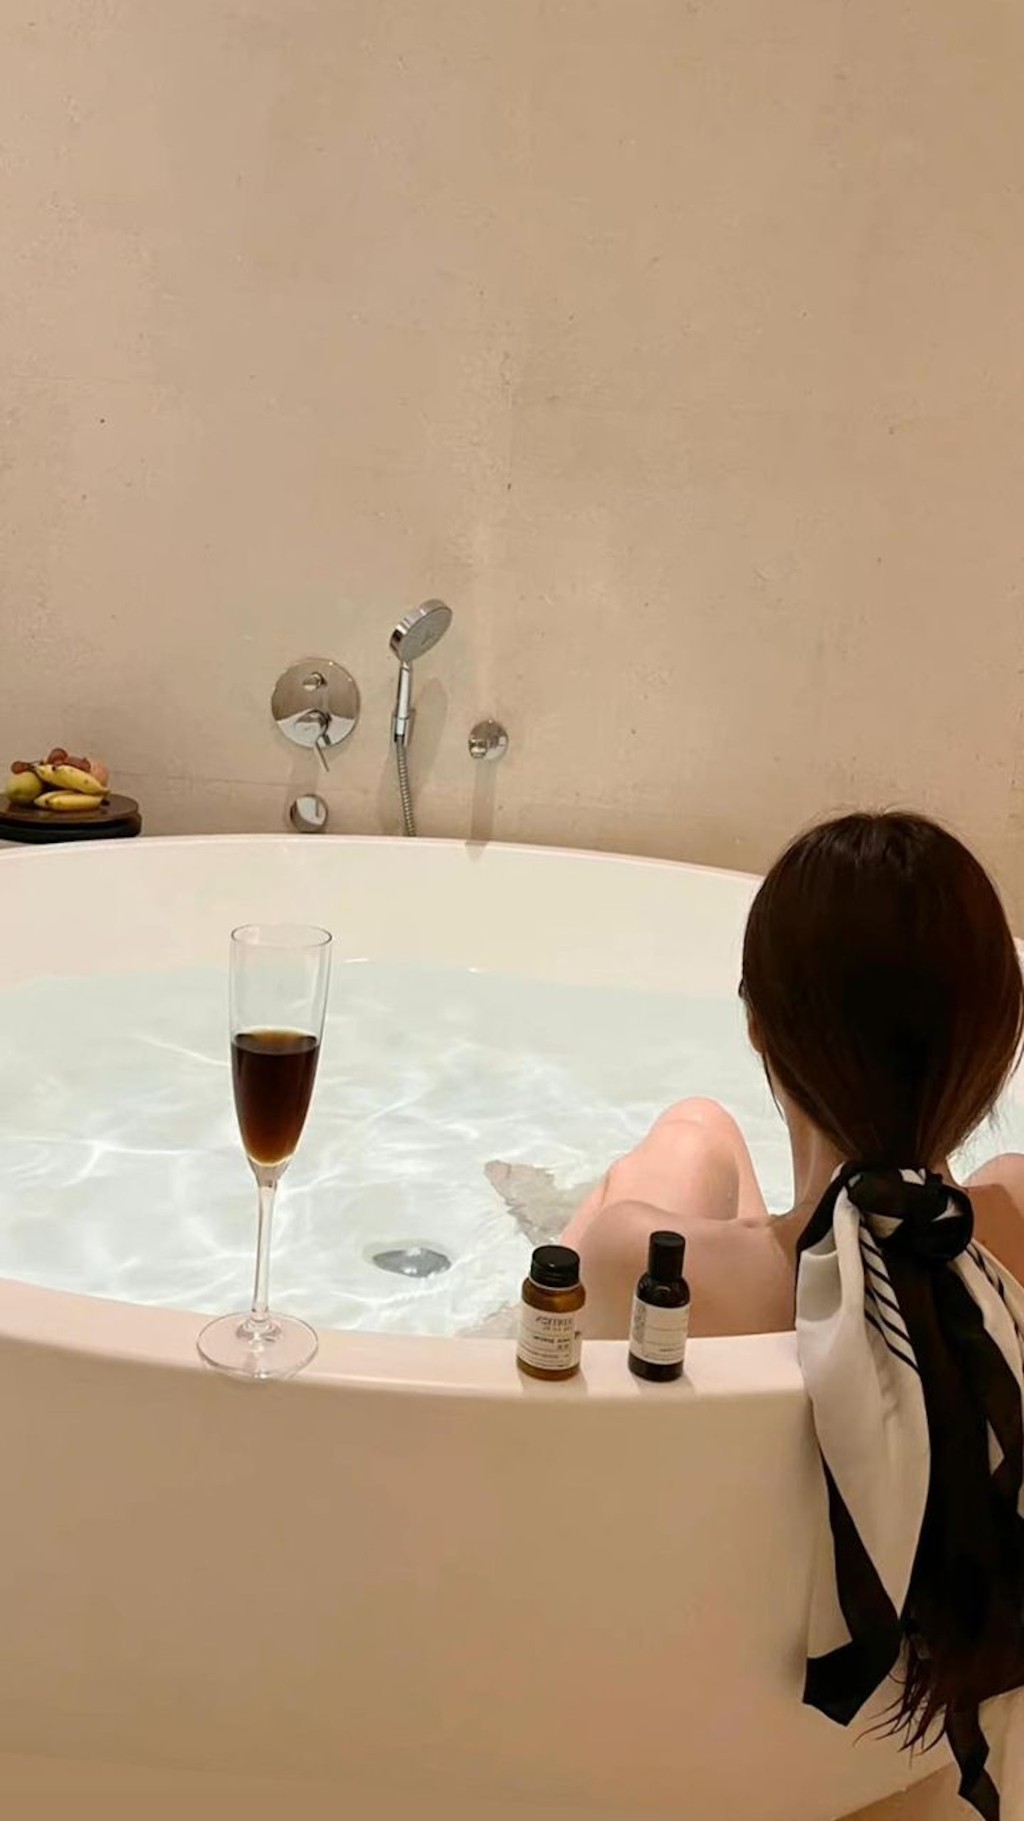 「基嫂」Chris上載在酒店staycation的出浴照，見到她一個人浸在圓型大浴缸內，皮膚白滑兼露出香肩和美腿，保養得宜。